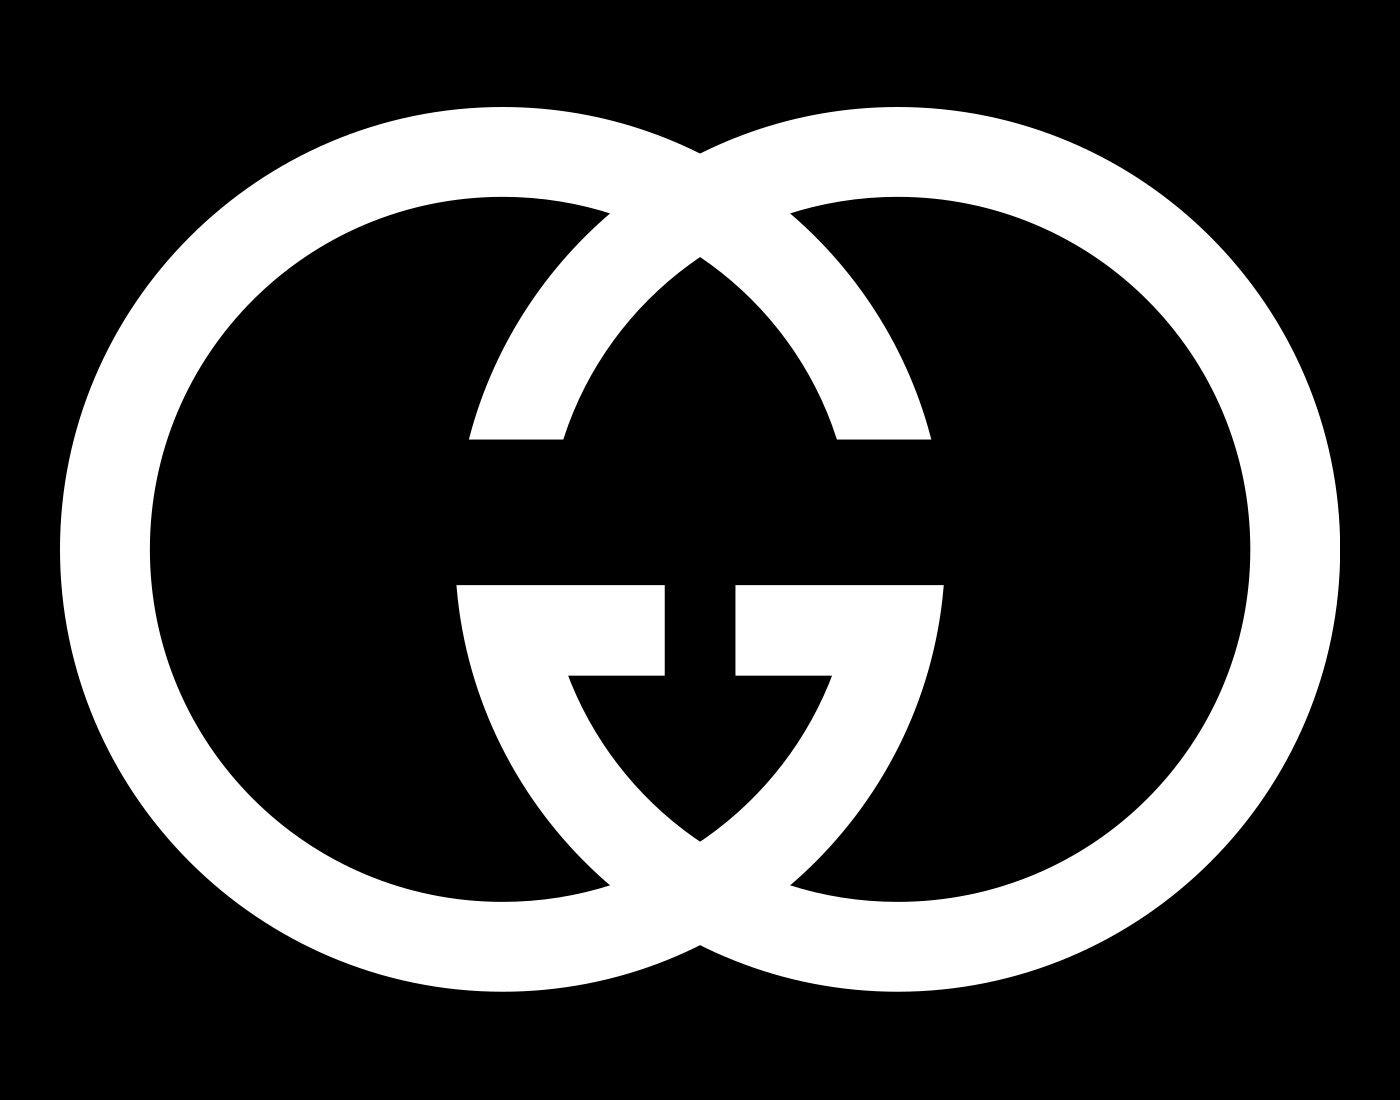 Gucci Symbol Logo - LogoDix